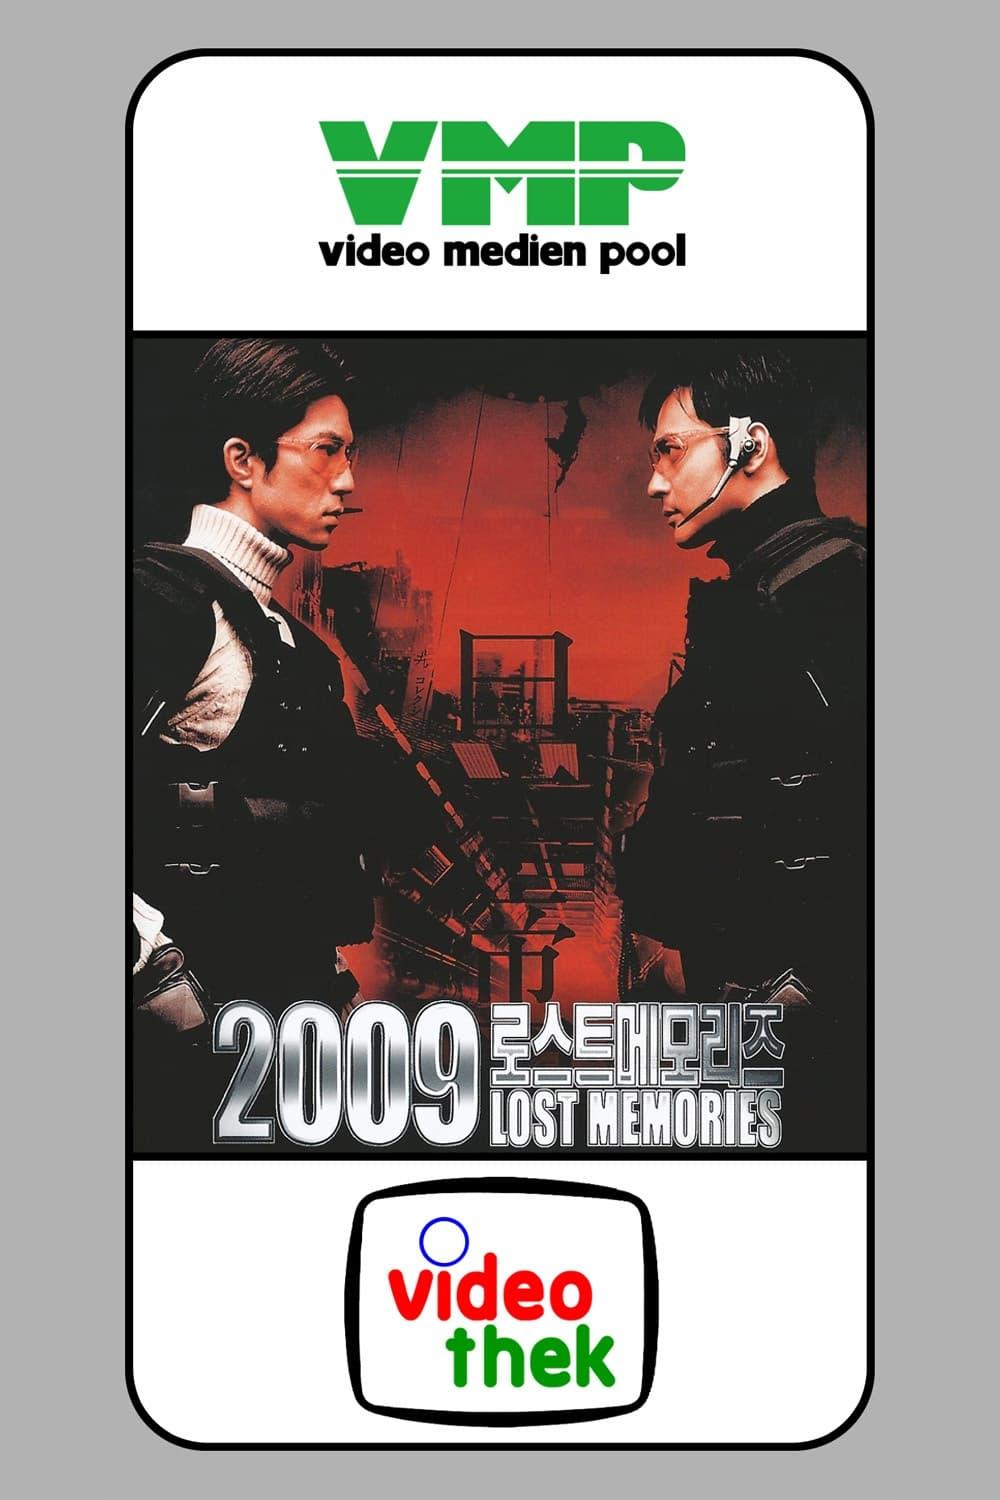 2009 - Lost Memories poster